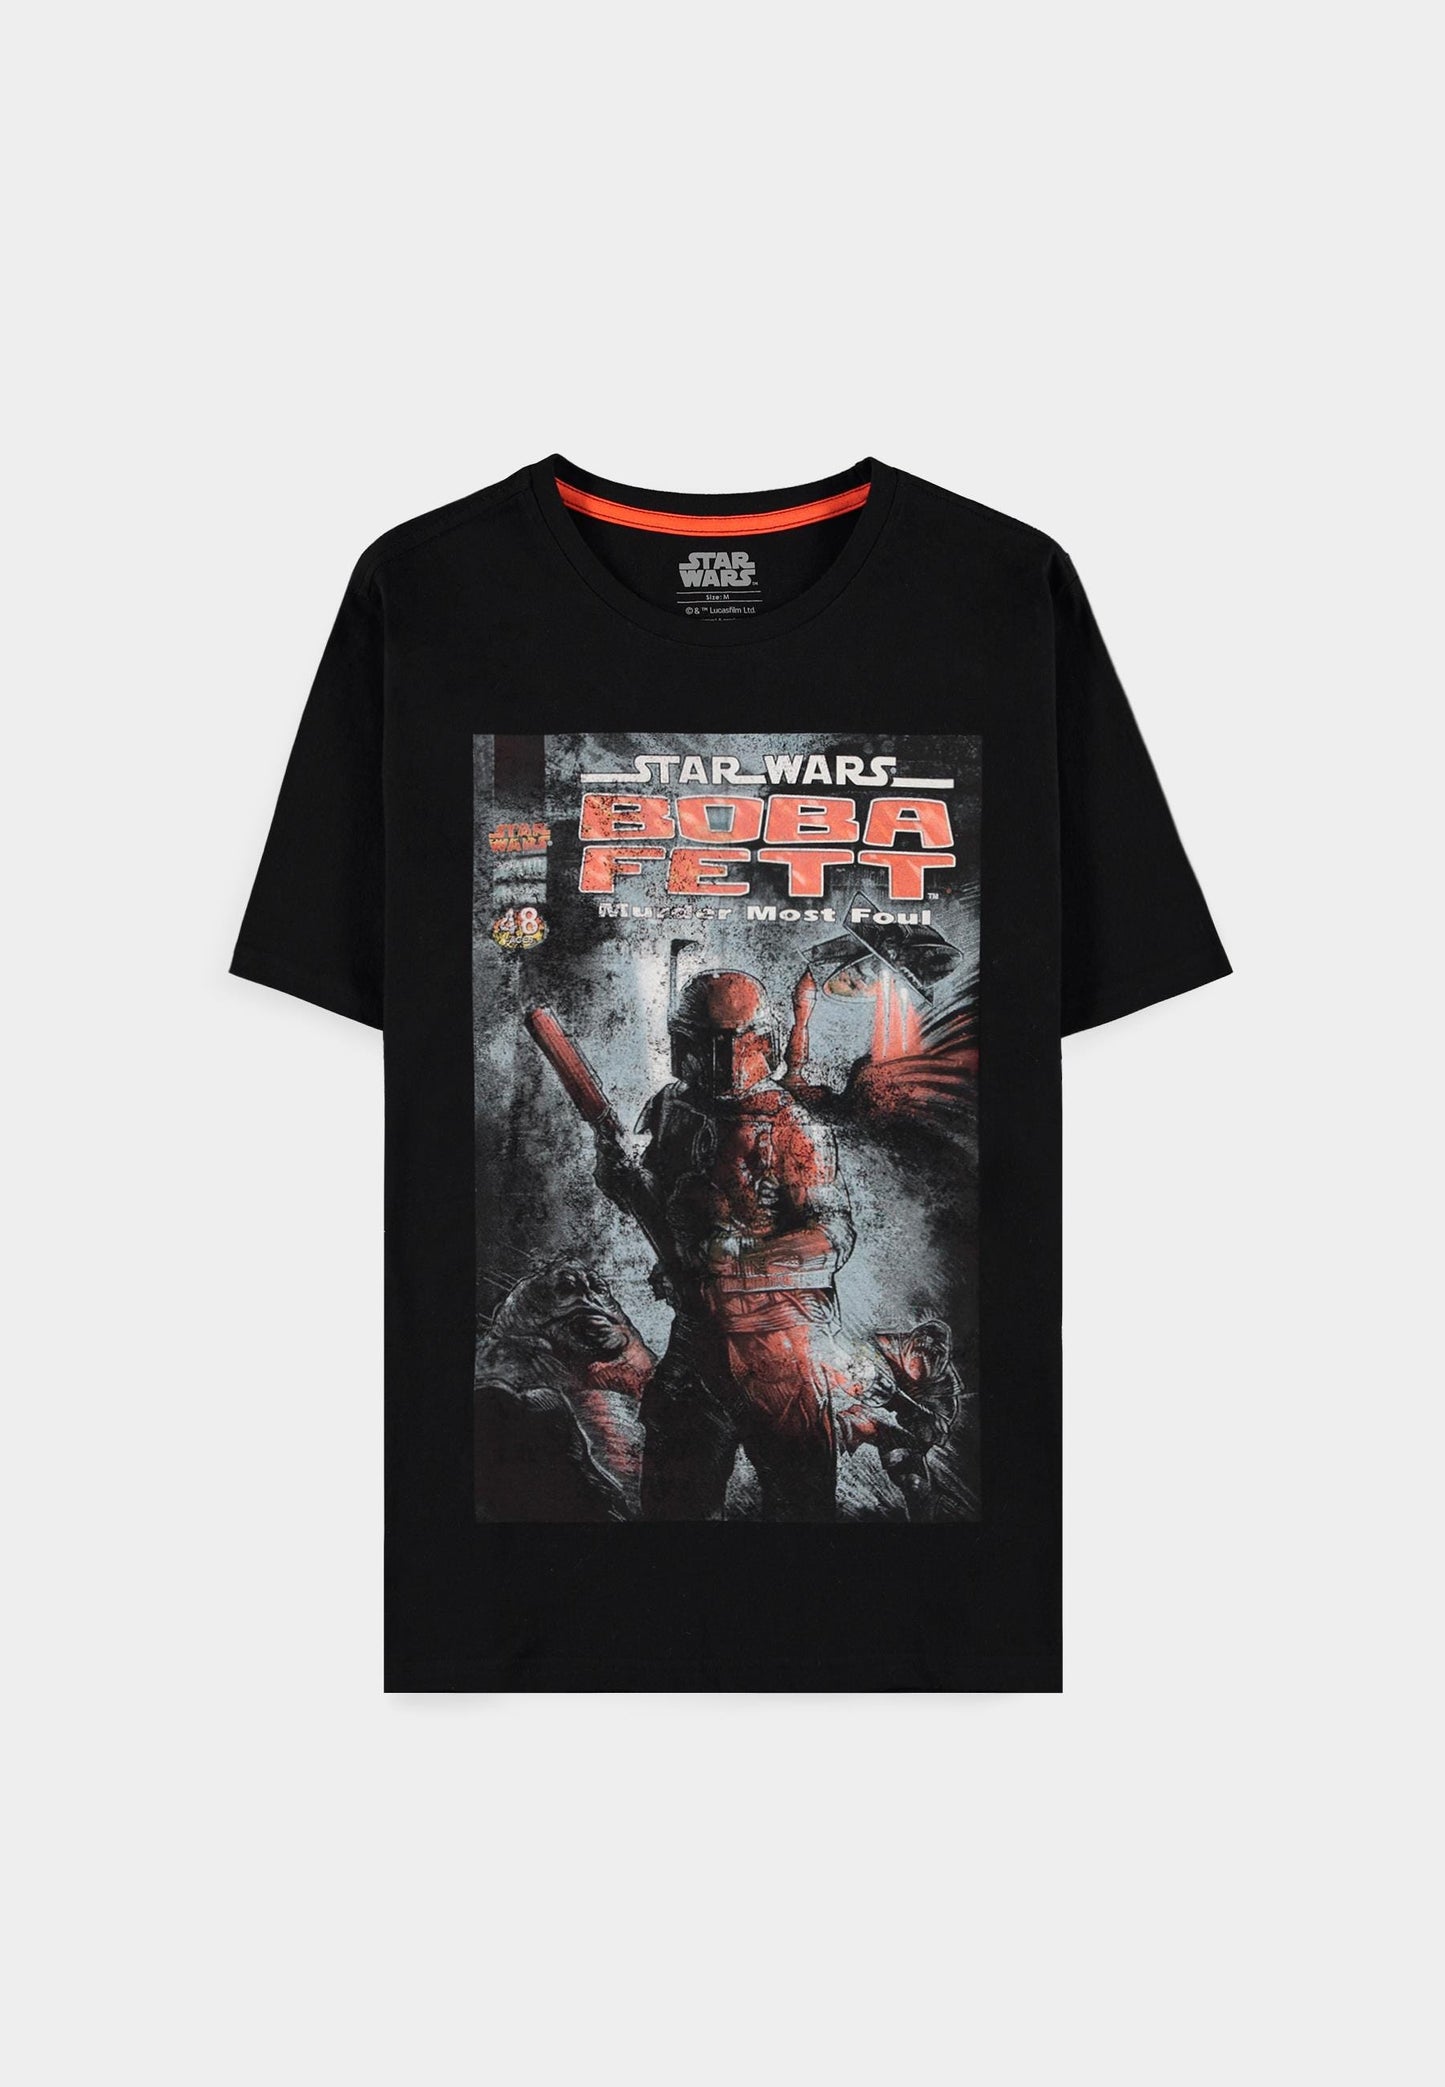 Boba Fett - The Legend - Men's Short Sleeved T-shirt